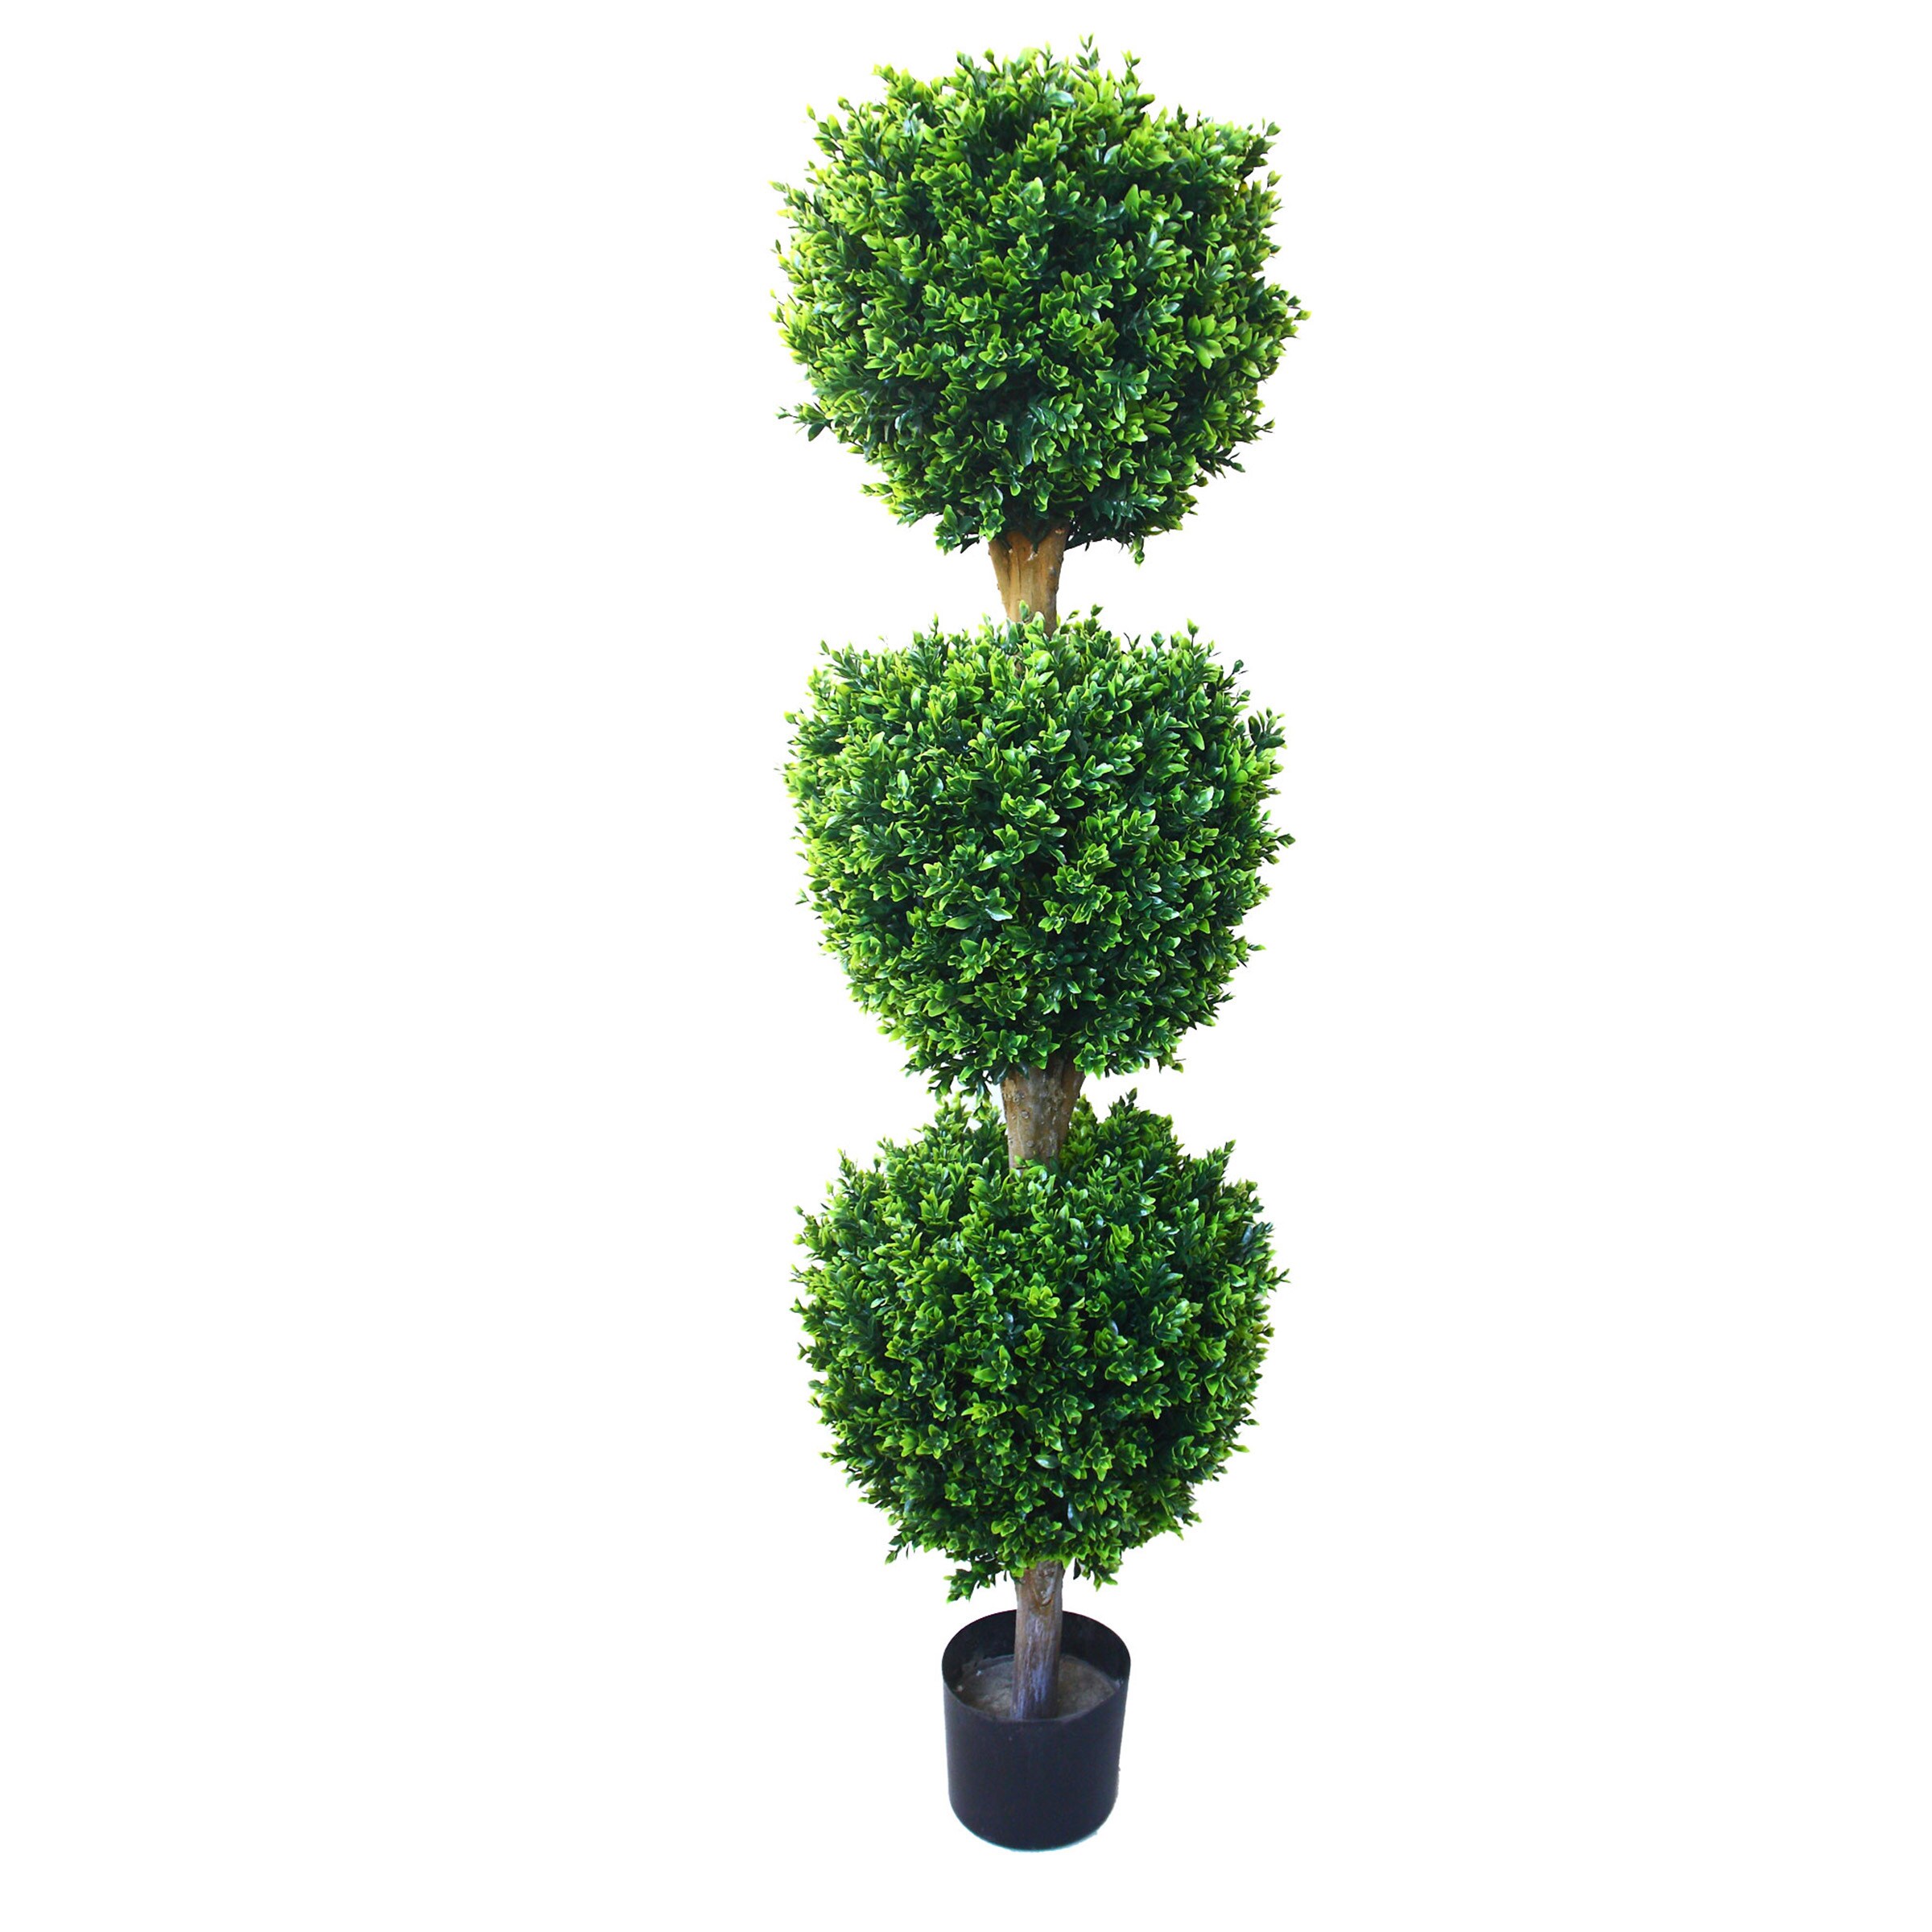 Green Artificial Boxwood Topiary Bush Tree Ornament Plant Ball Patio Home Decor 